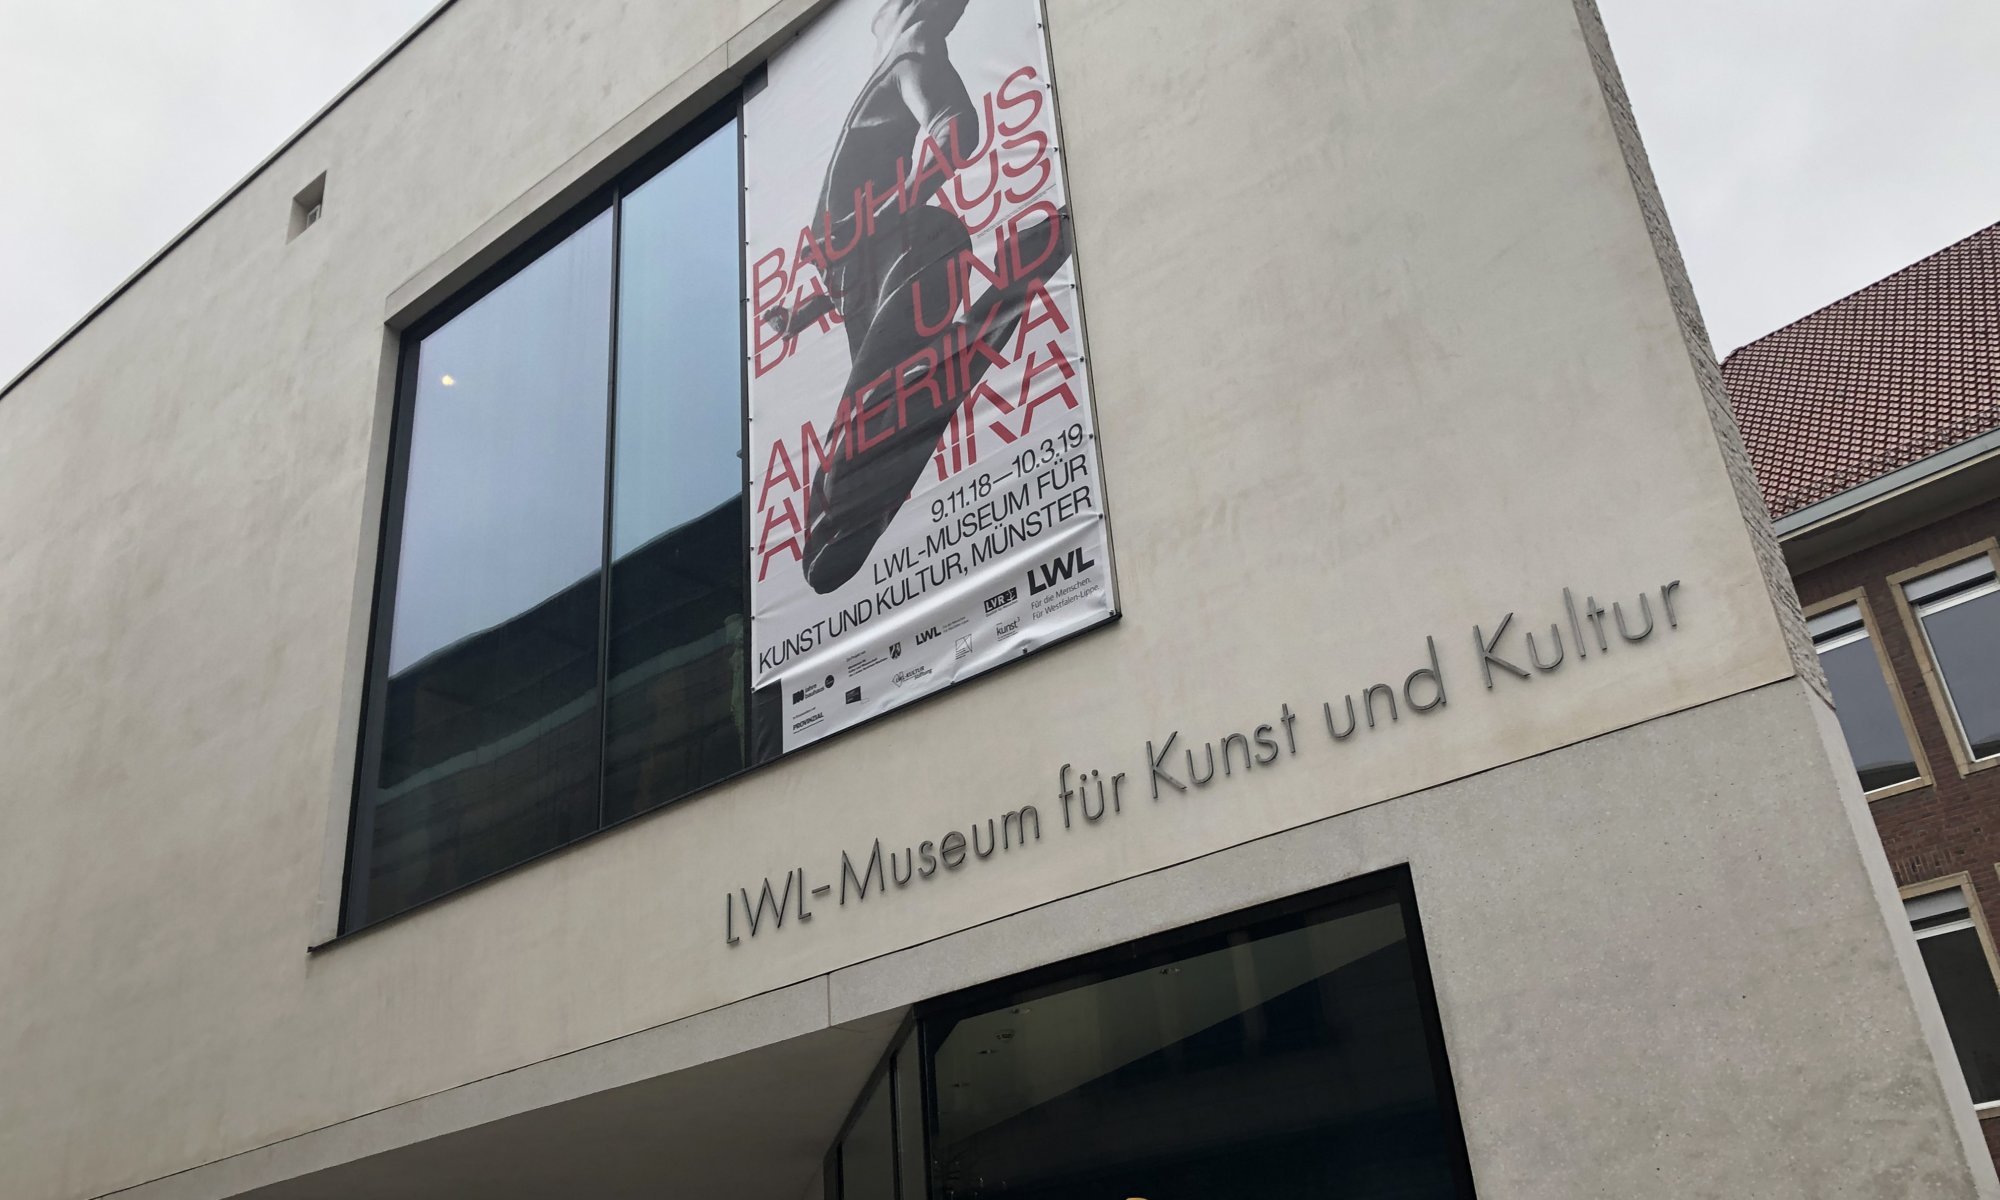 LWL-Museum für Kunst und Kultur, Münster